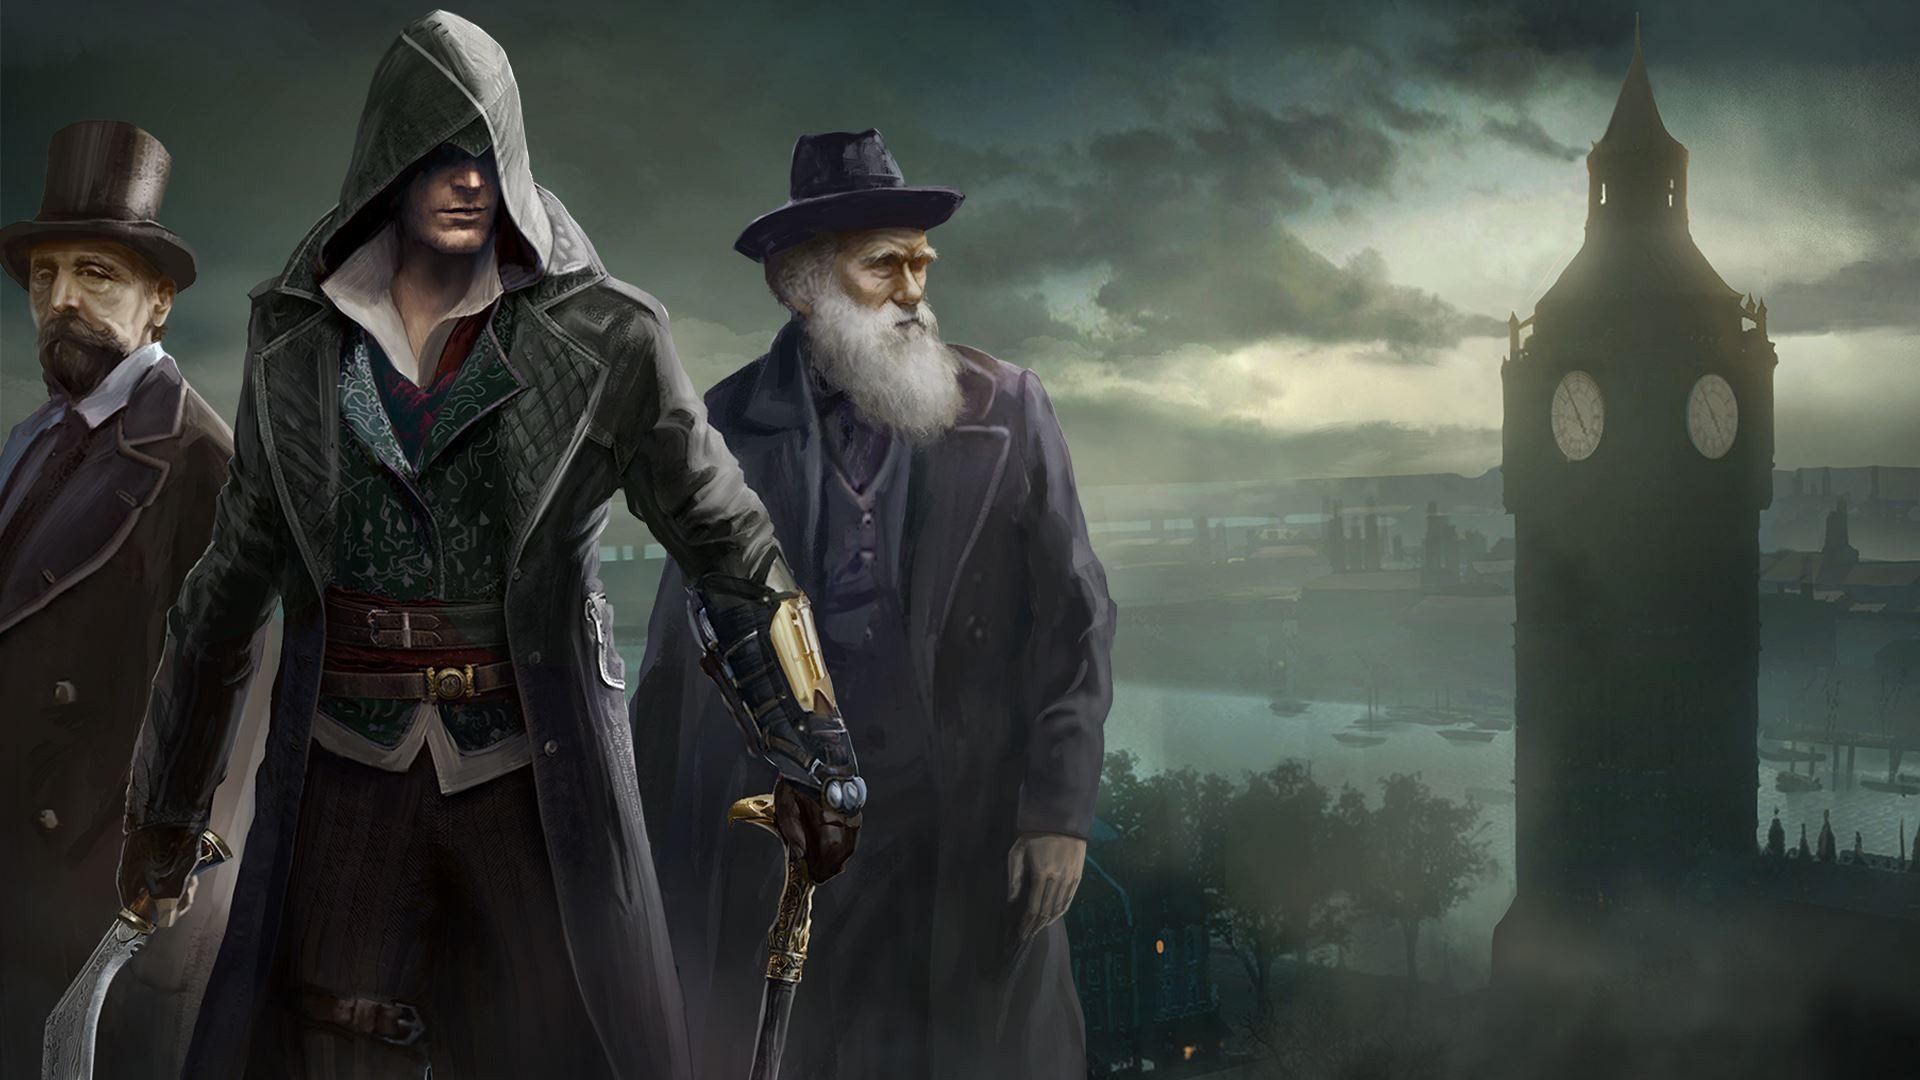 Scarica Sfondi Syndicate Assassins Creed Carattere Giochi 15 Azione Avventura Ubisoft Quebec Ps4 Xbox One Monitor Con Risoluzione 19x1080 Immagini Sul Desktop